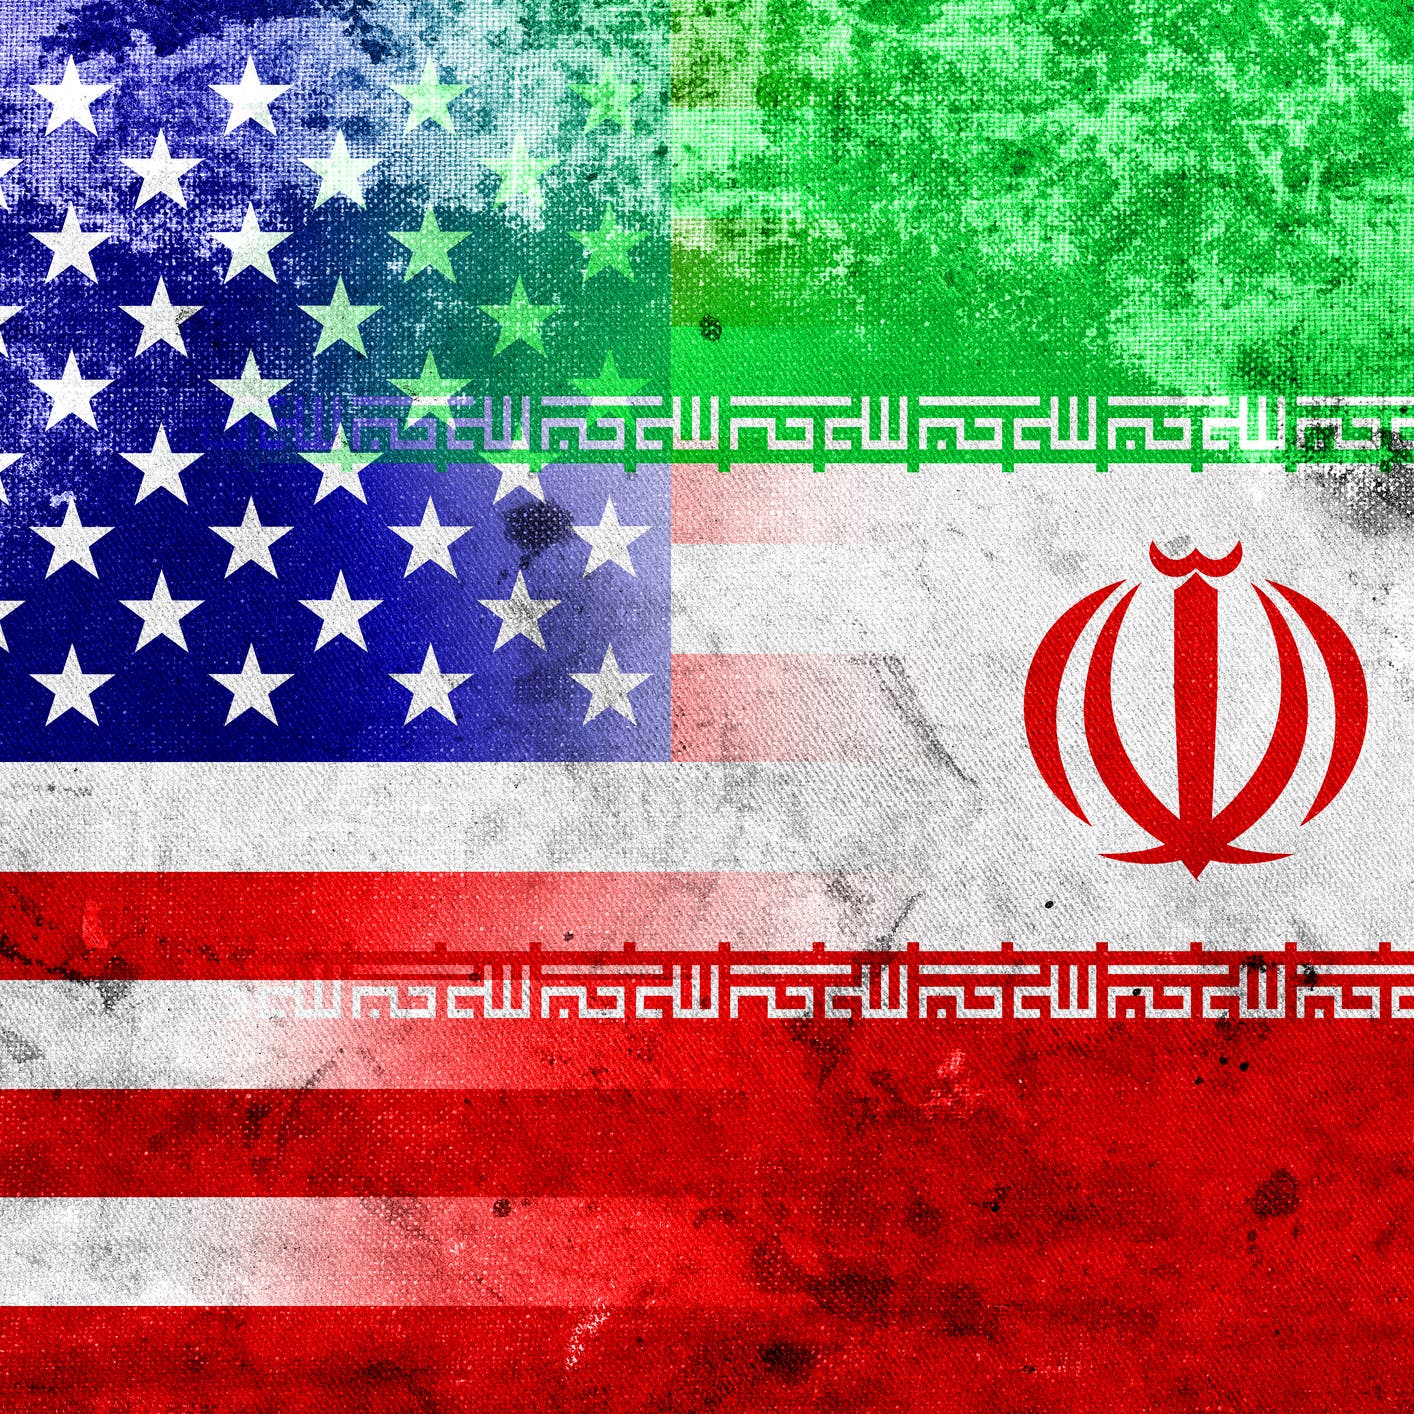 أميركا تدعو إيران للعدول عن أي خطوات تضر بتعهداتها النووية